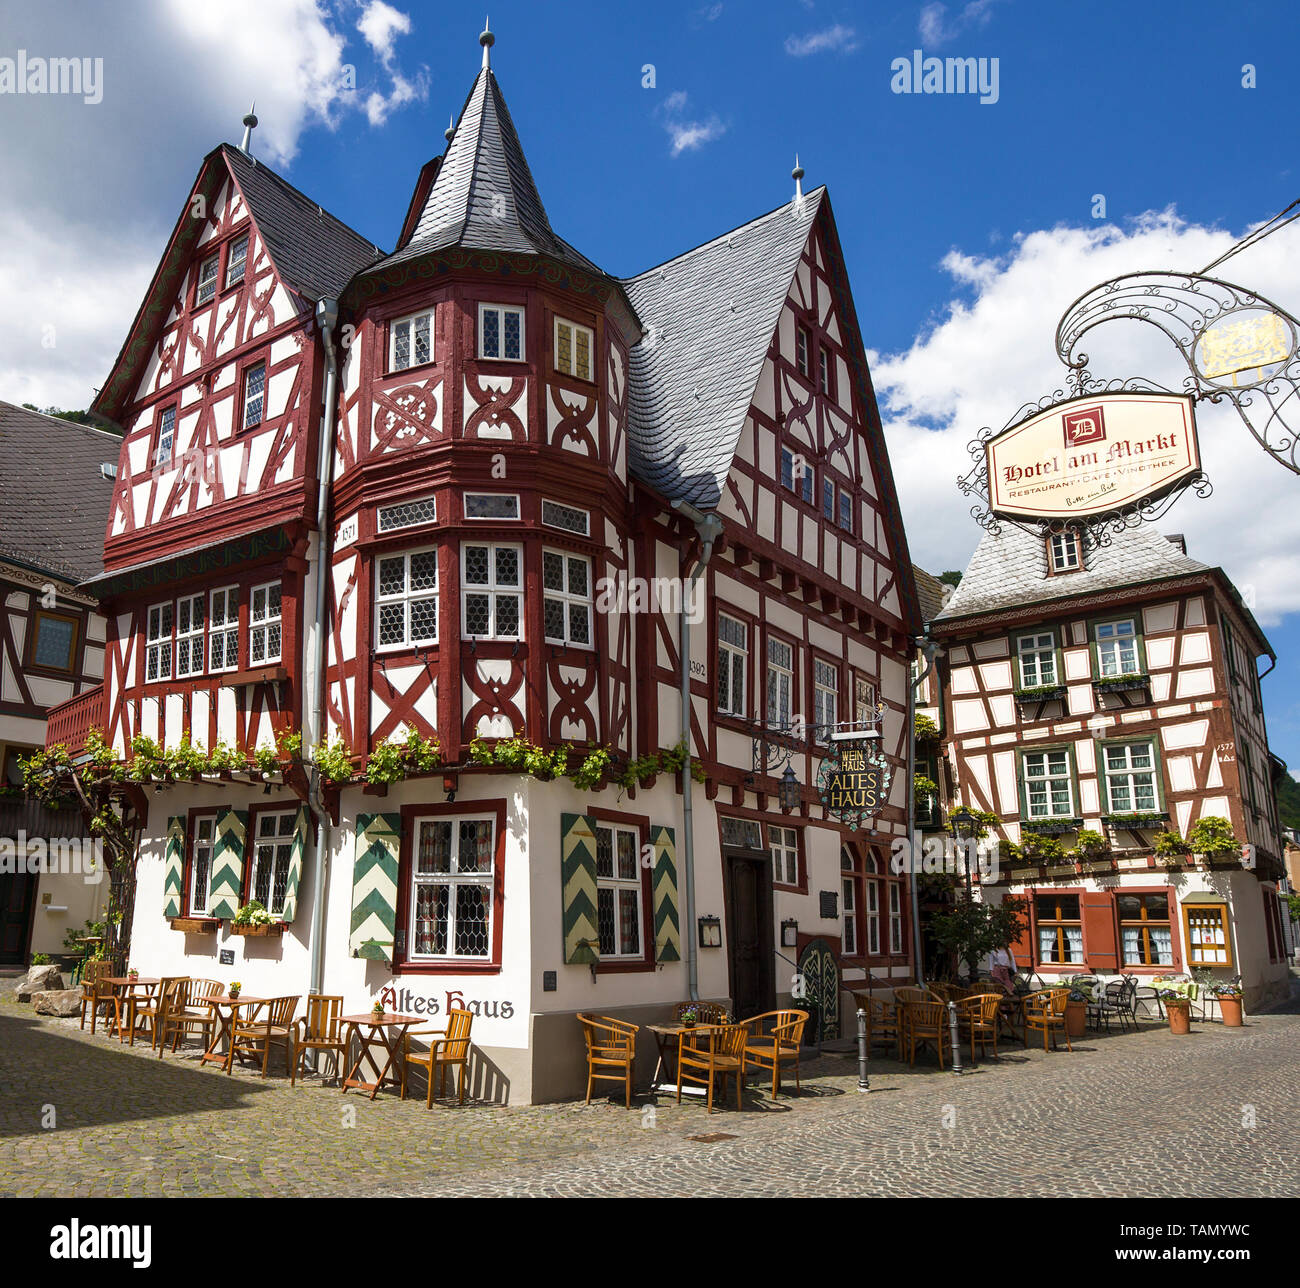 La vecchia casa, casa in legno e muratura a Bacharach, sito patrimonio mondiale dell'Unesco, Valle del Reno superiore e centrale, Renania-Palatinato, Germania Foto Stock